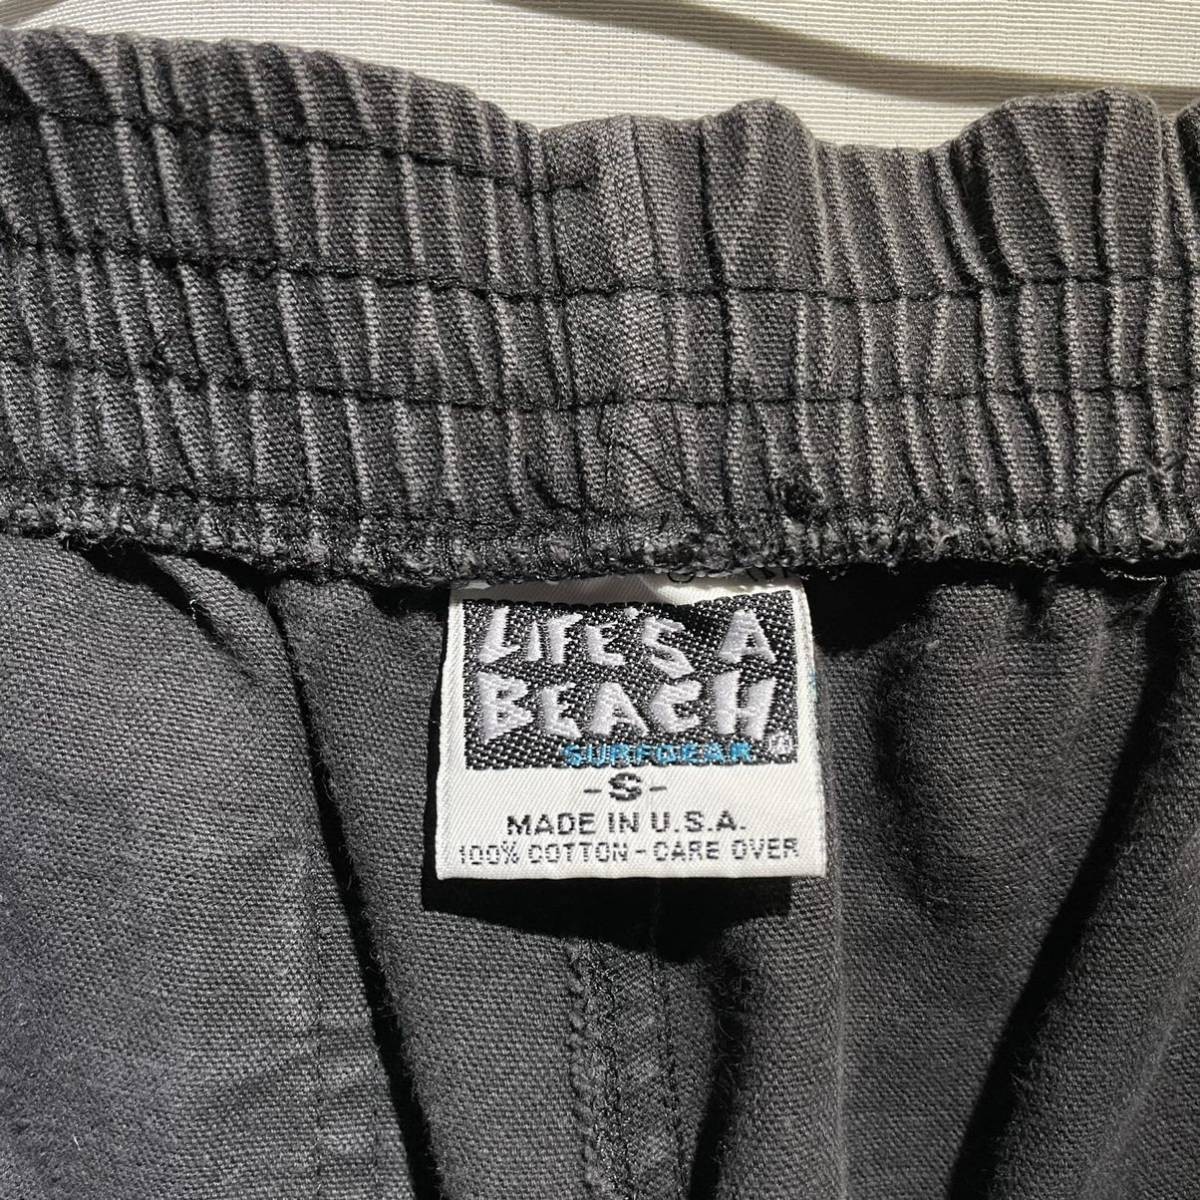  редкий! 80s LIFE*S A BEACH чёрный Duck шорты USA производства Vintage OLD Surf skate черный 